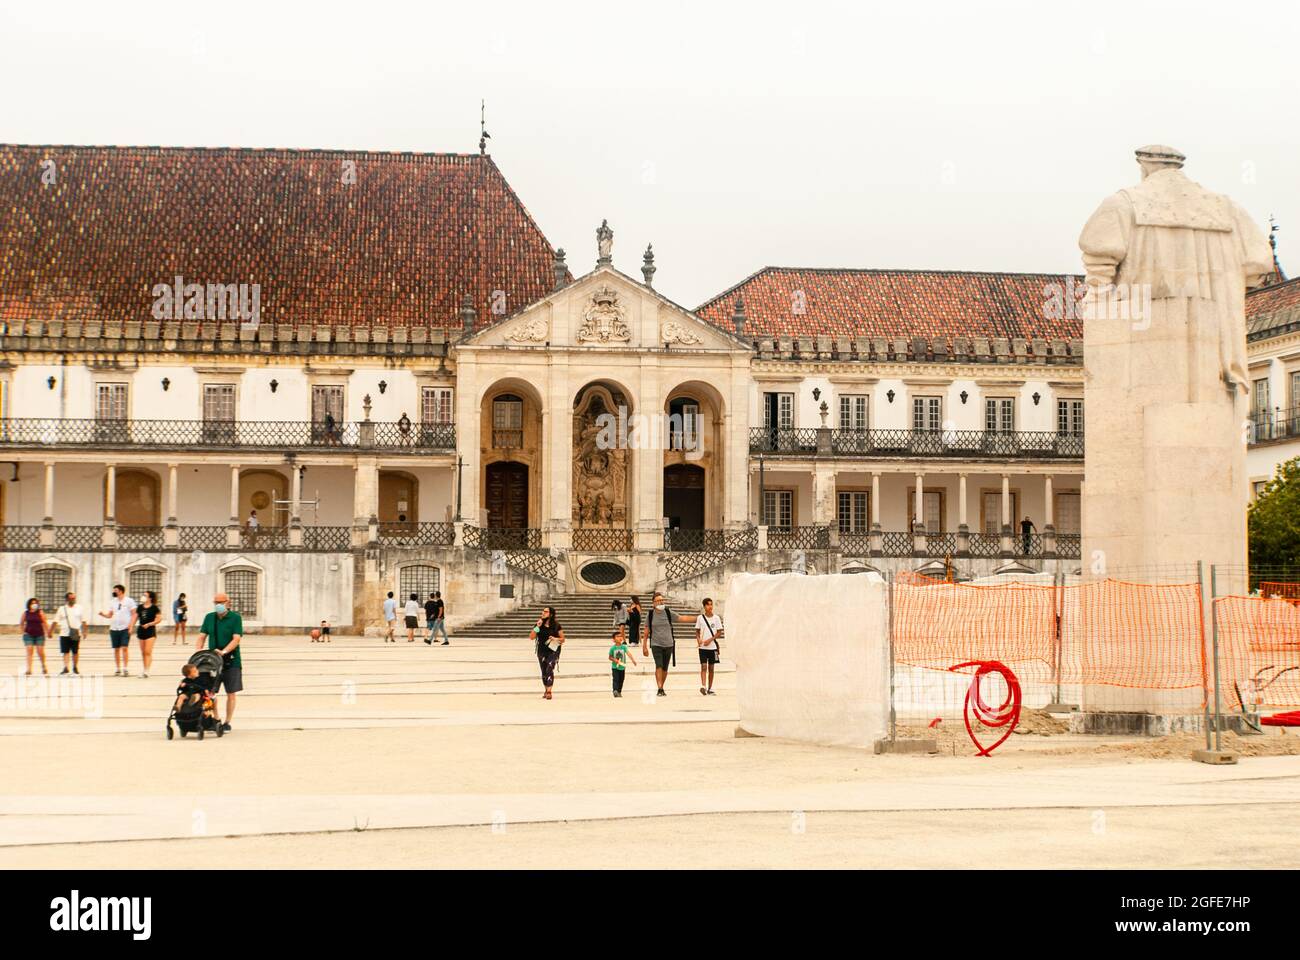 Construction à l'Université de Coimbra Faculté de droit statue de la place du Roi touristes marchant autour de la place - Portugal Banque D'Images